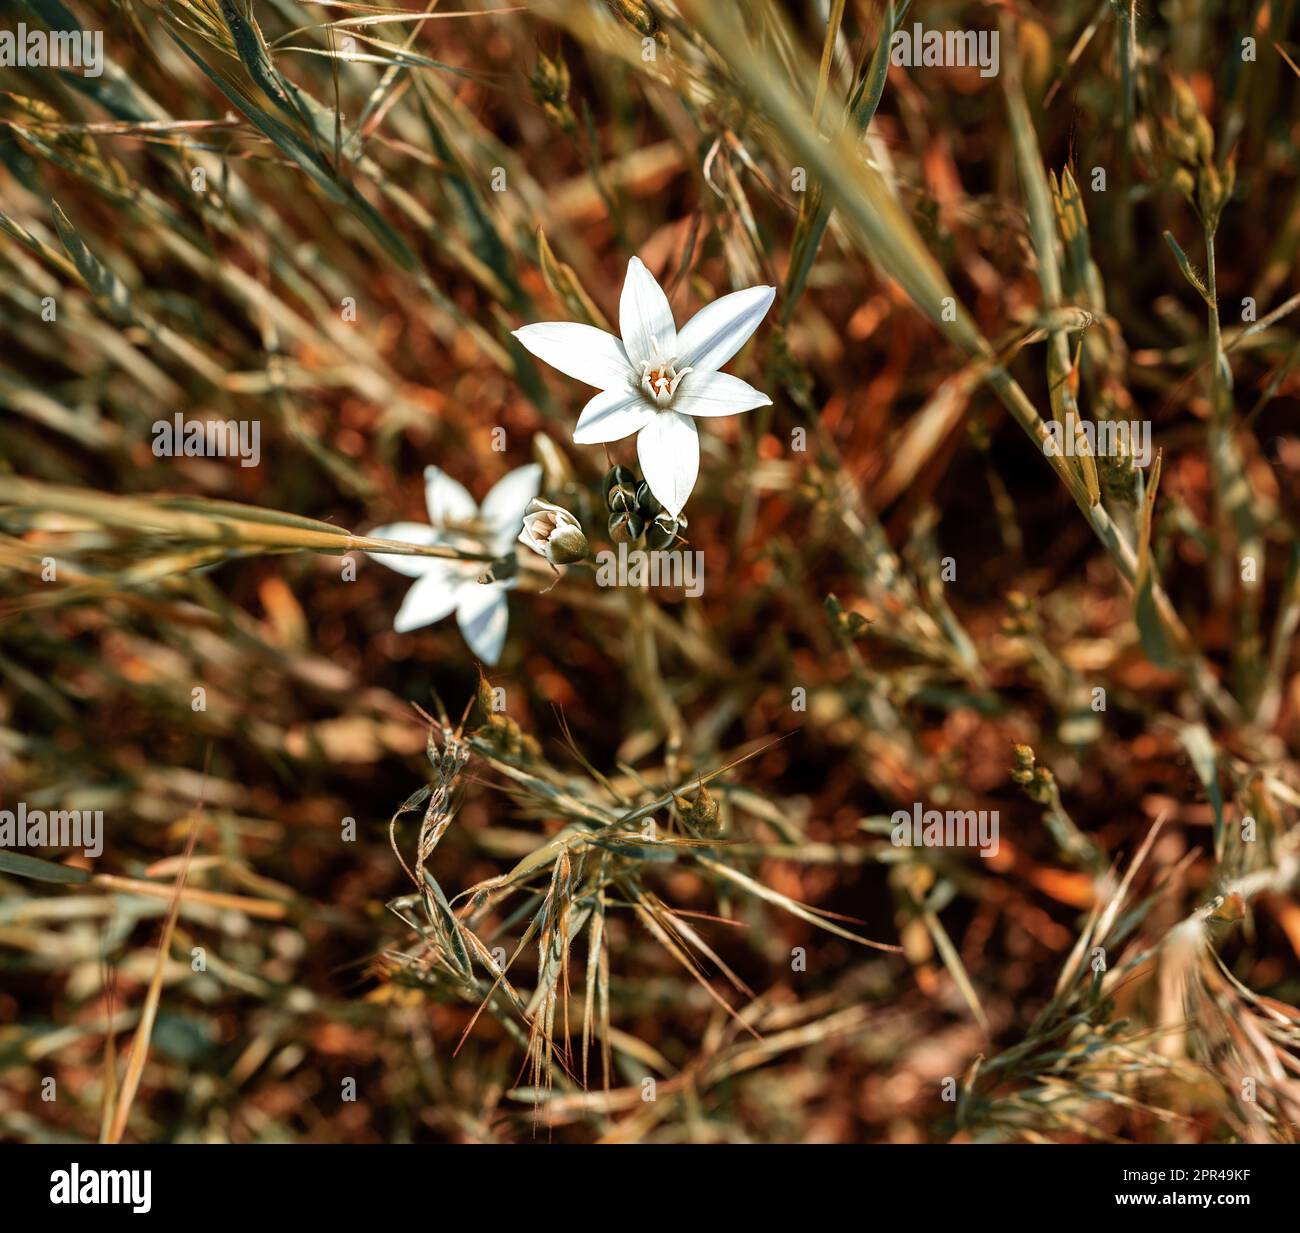 Belleza de la flor blanca en la naturaleza, lirio de hierba, jardín estrella-de-Belén, siesta-al-mediodía, Ornithogalum umbellatum. Foto de stock